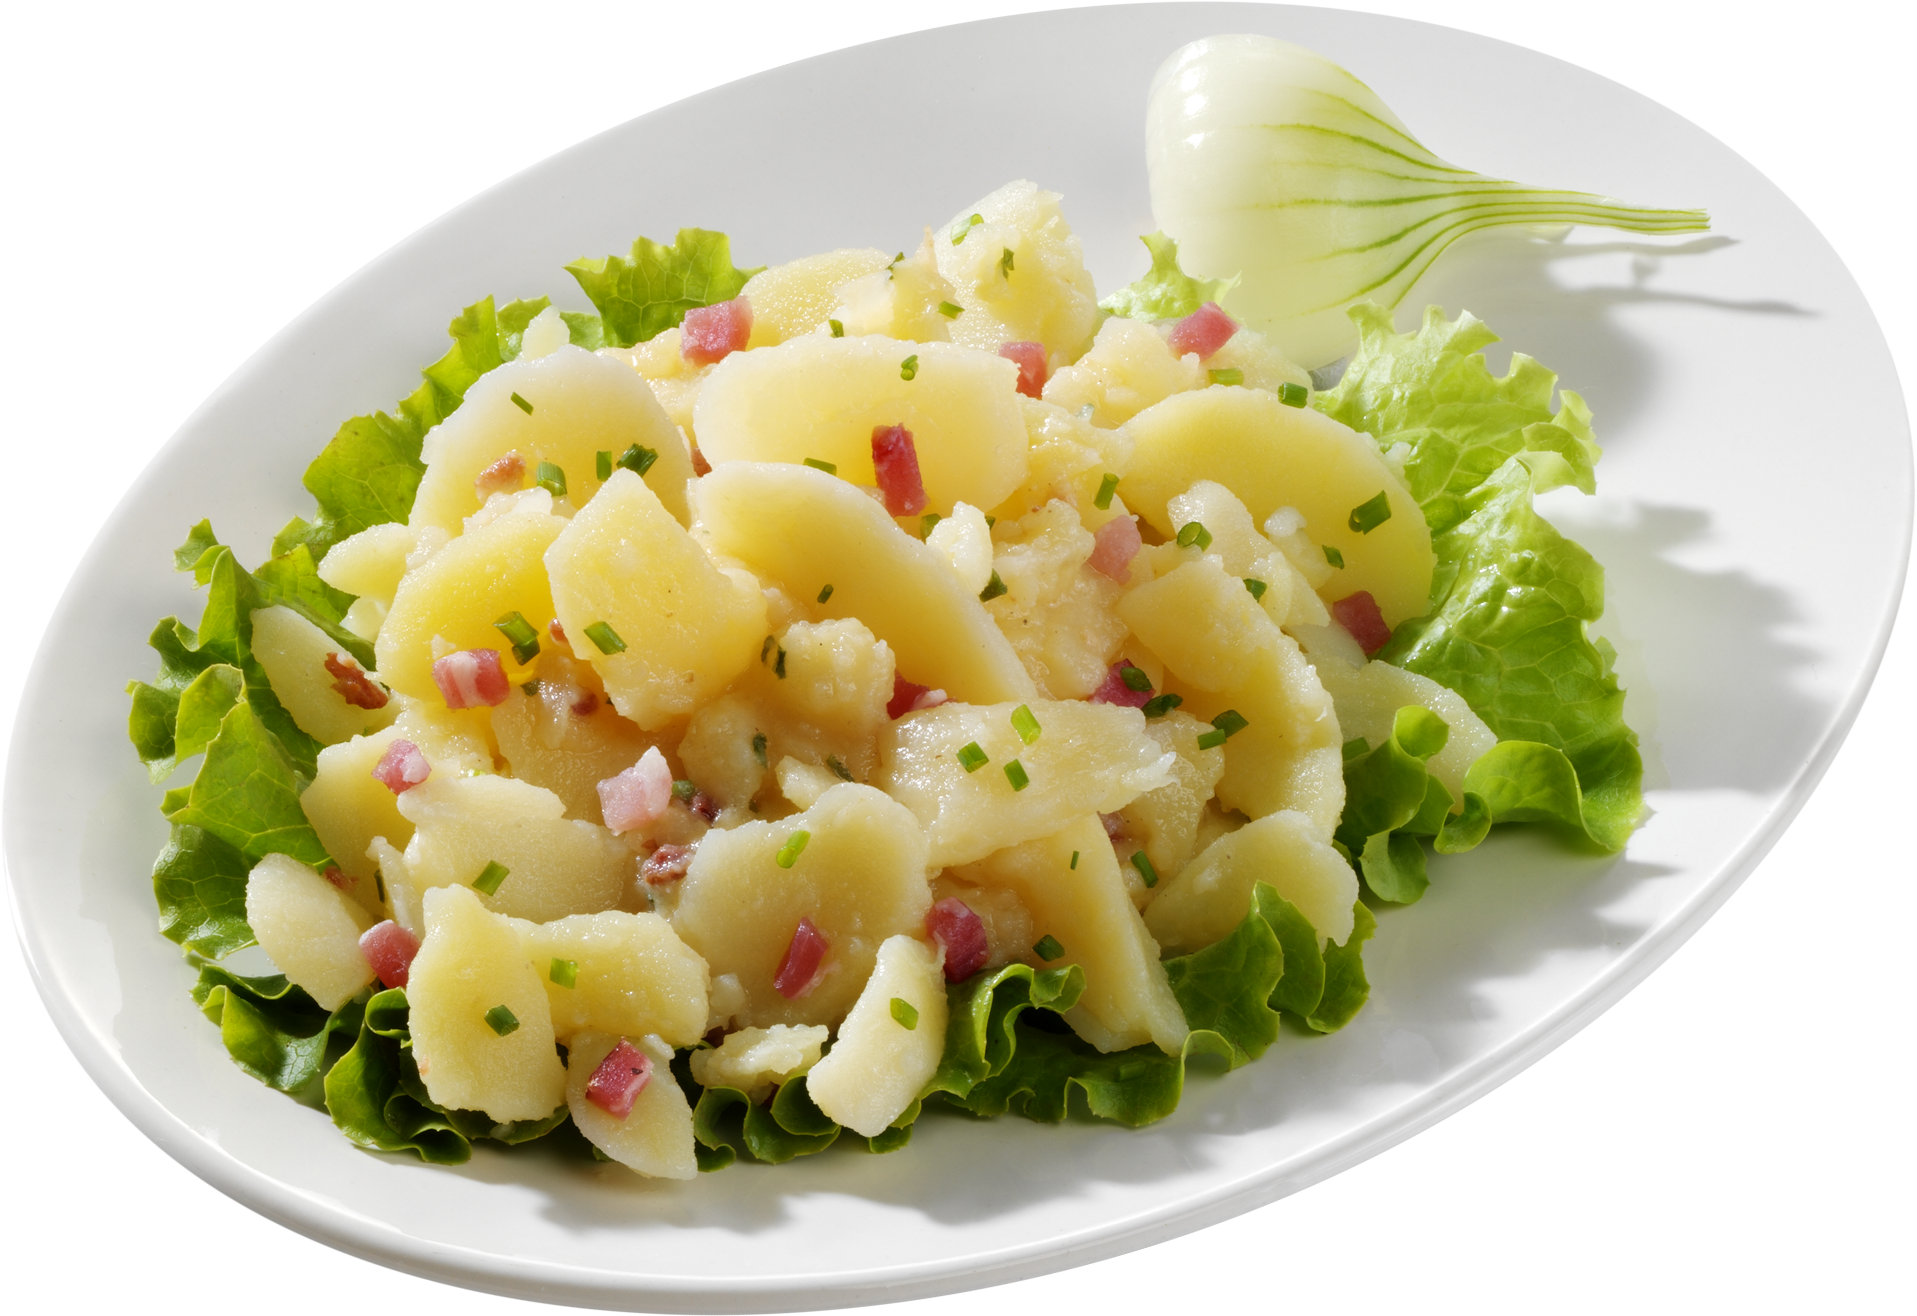 Speck-Kartoffel-Salat